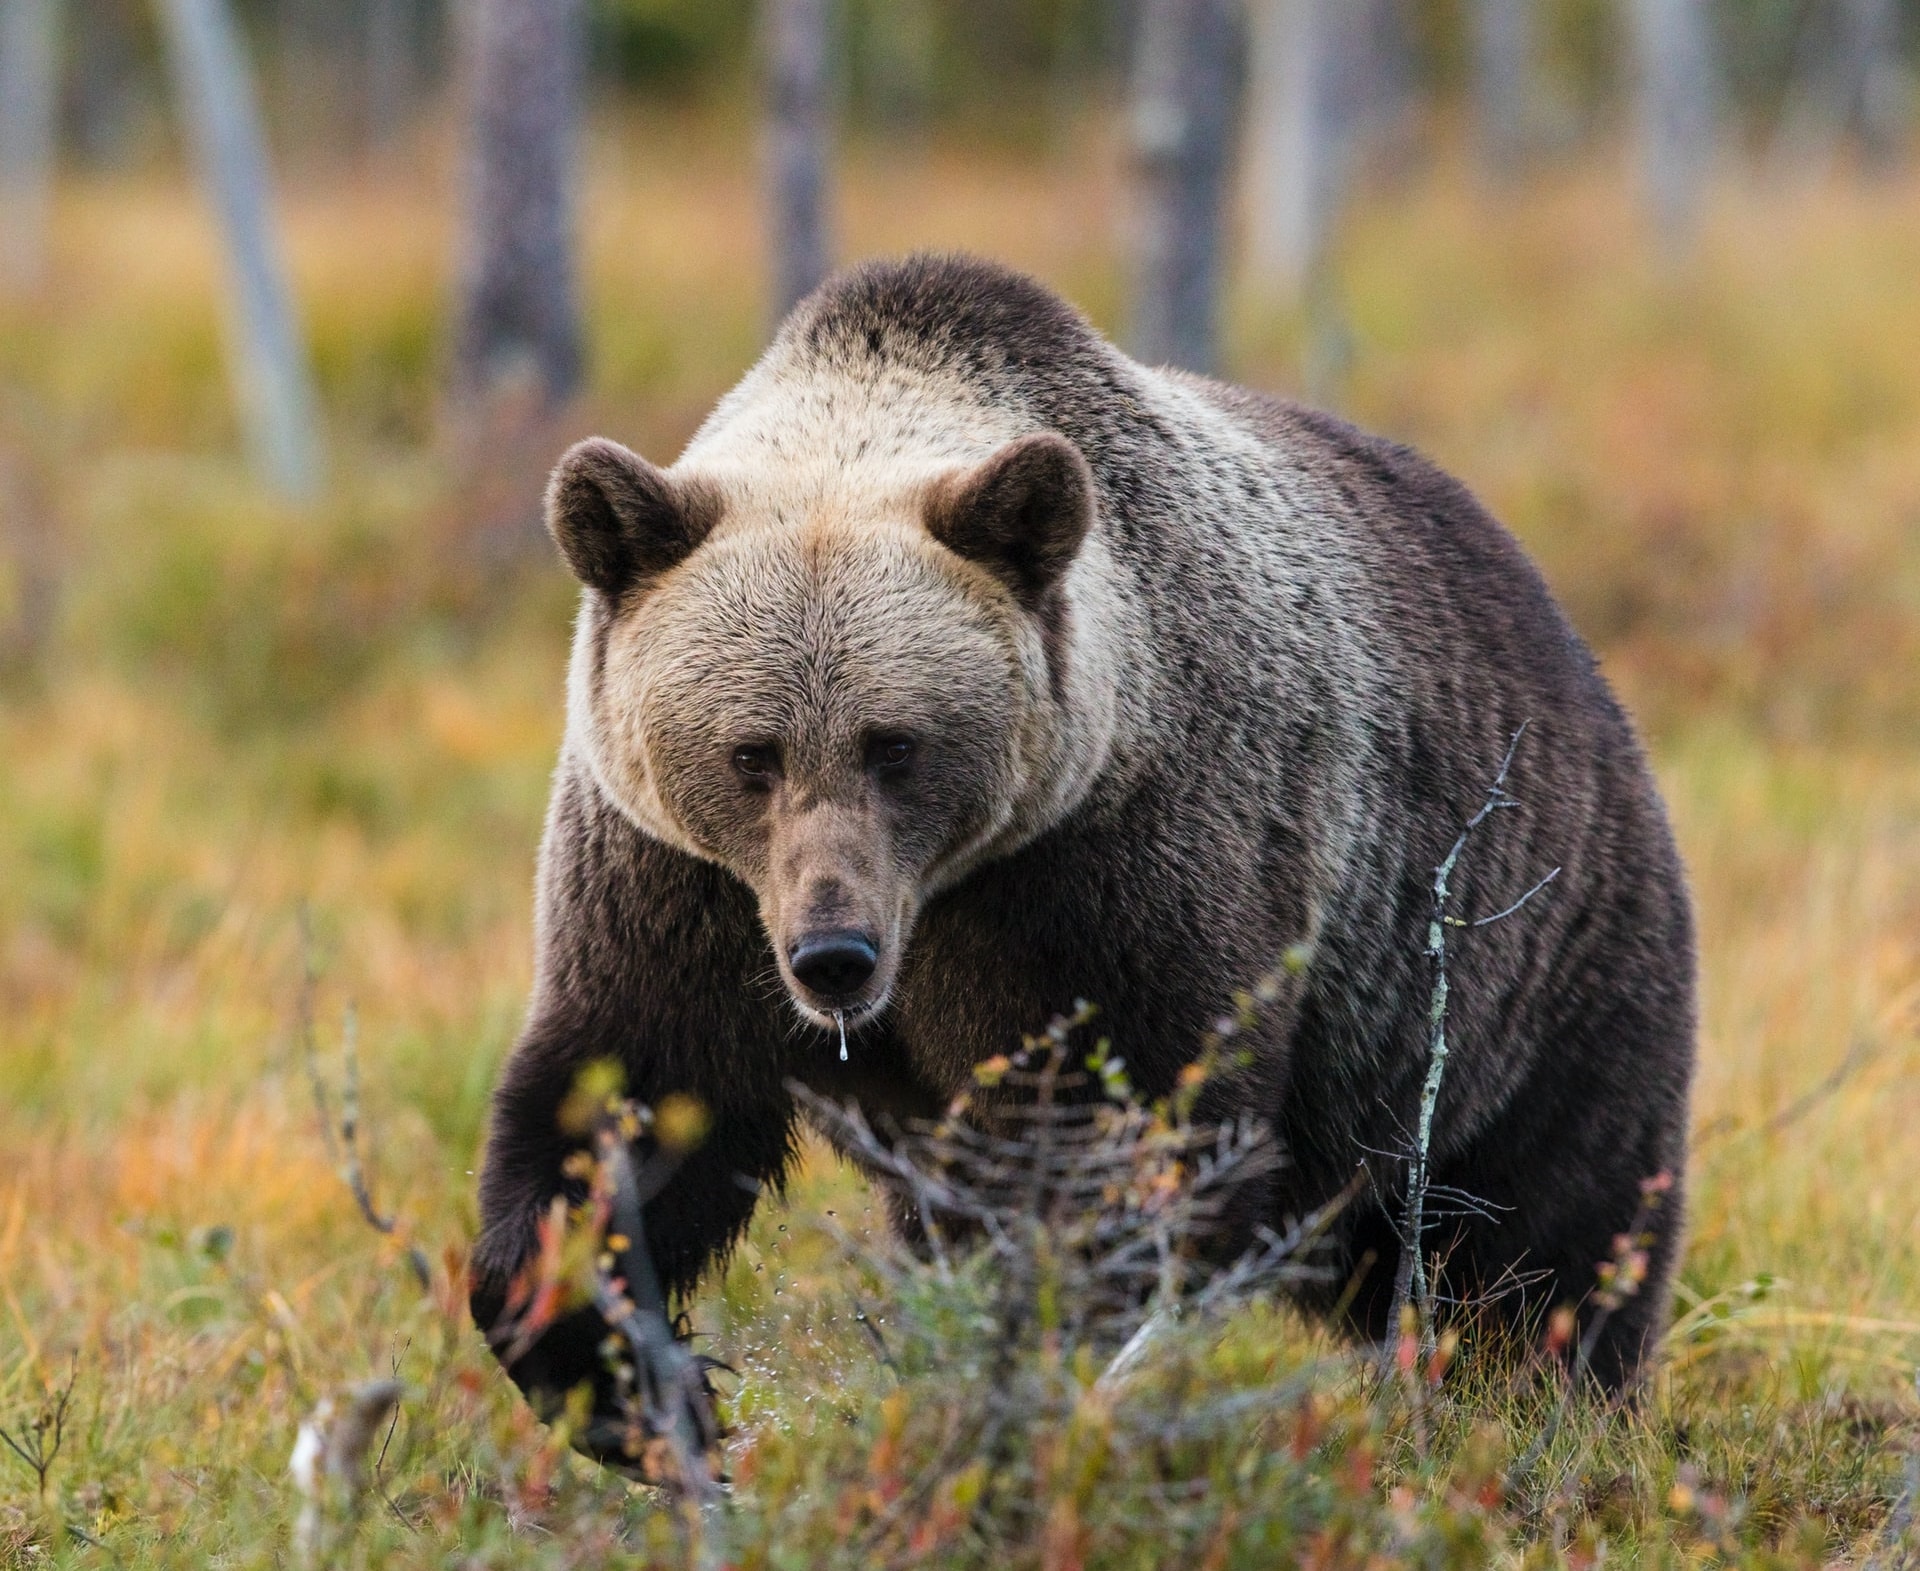 Происшествия, Томские новости, южные ворота дикие животные медведи микрорайон звери нападение дикая природа Медведь зашел в микрорайон Южные ворота в Томске